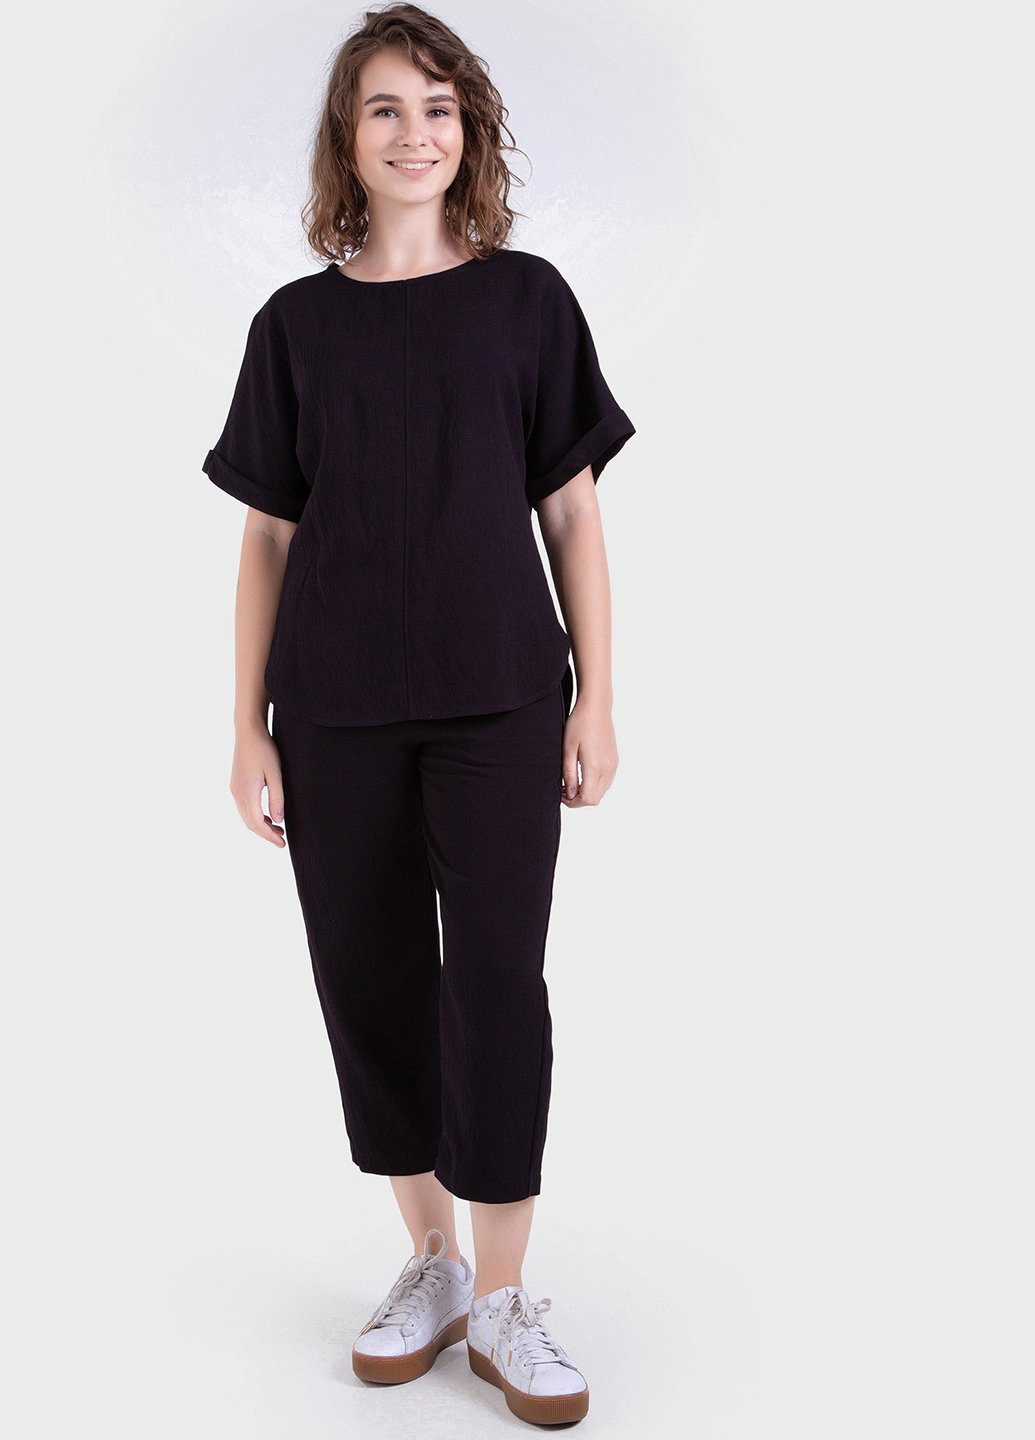 Купить Летний костюм женский двойка черного цвета: брюки, футболка Merlini Санремо 100000147, размер 42-44 в интернет-магазине